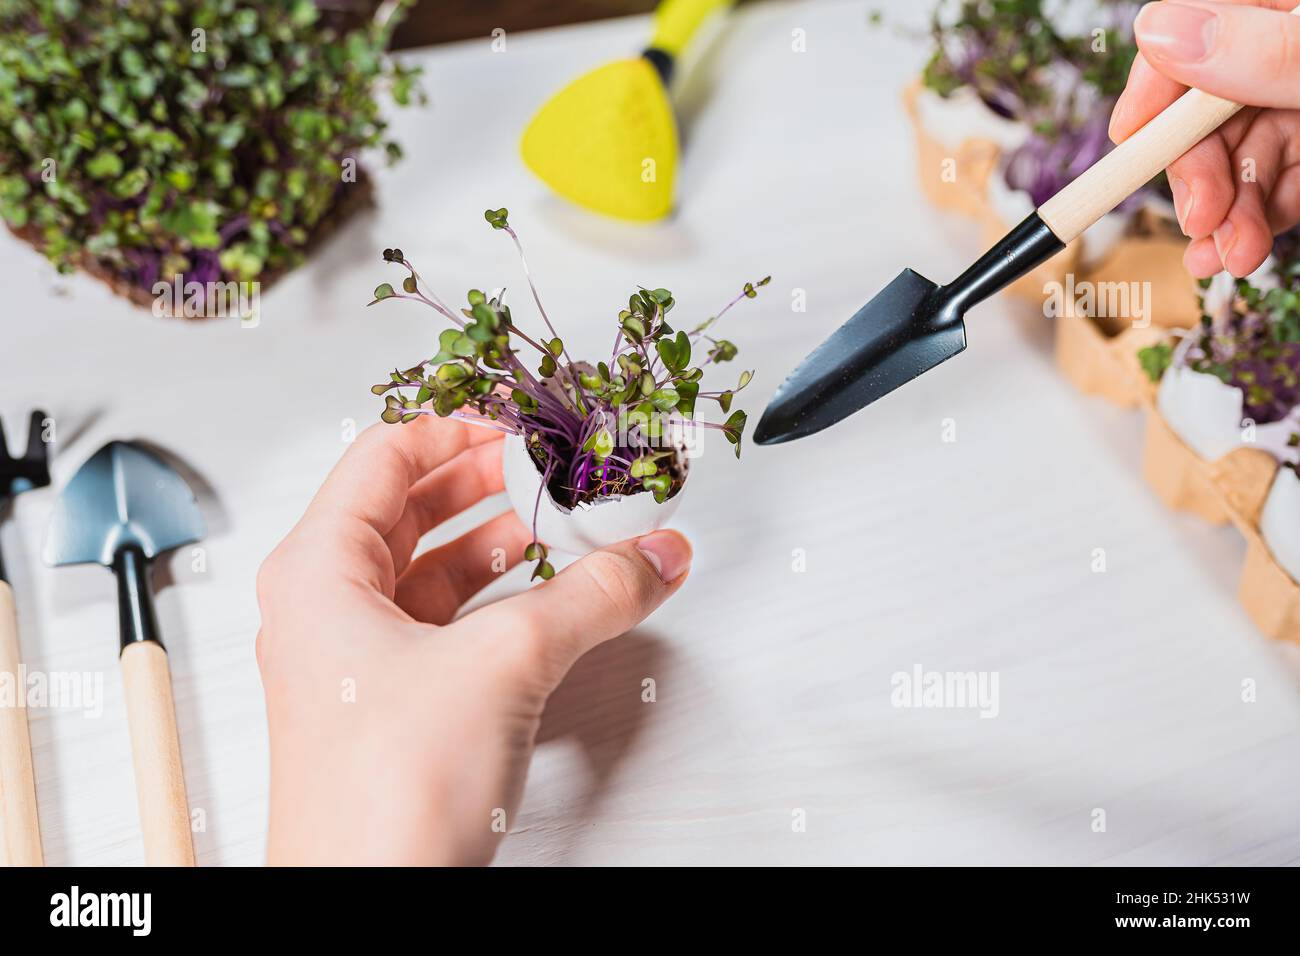 Die Hand der Frau hält Eierschale mit darin gepflanzten Mikrogrüns und Gartenschaufel, Konzept der wachsenden Setzlinge oder Mikrogrüns in organischen Behälter. Stockfoto